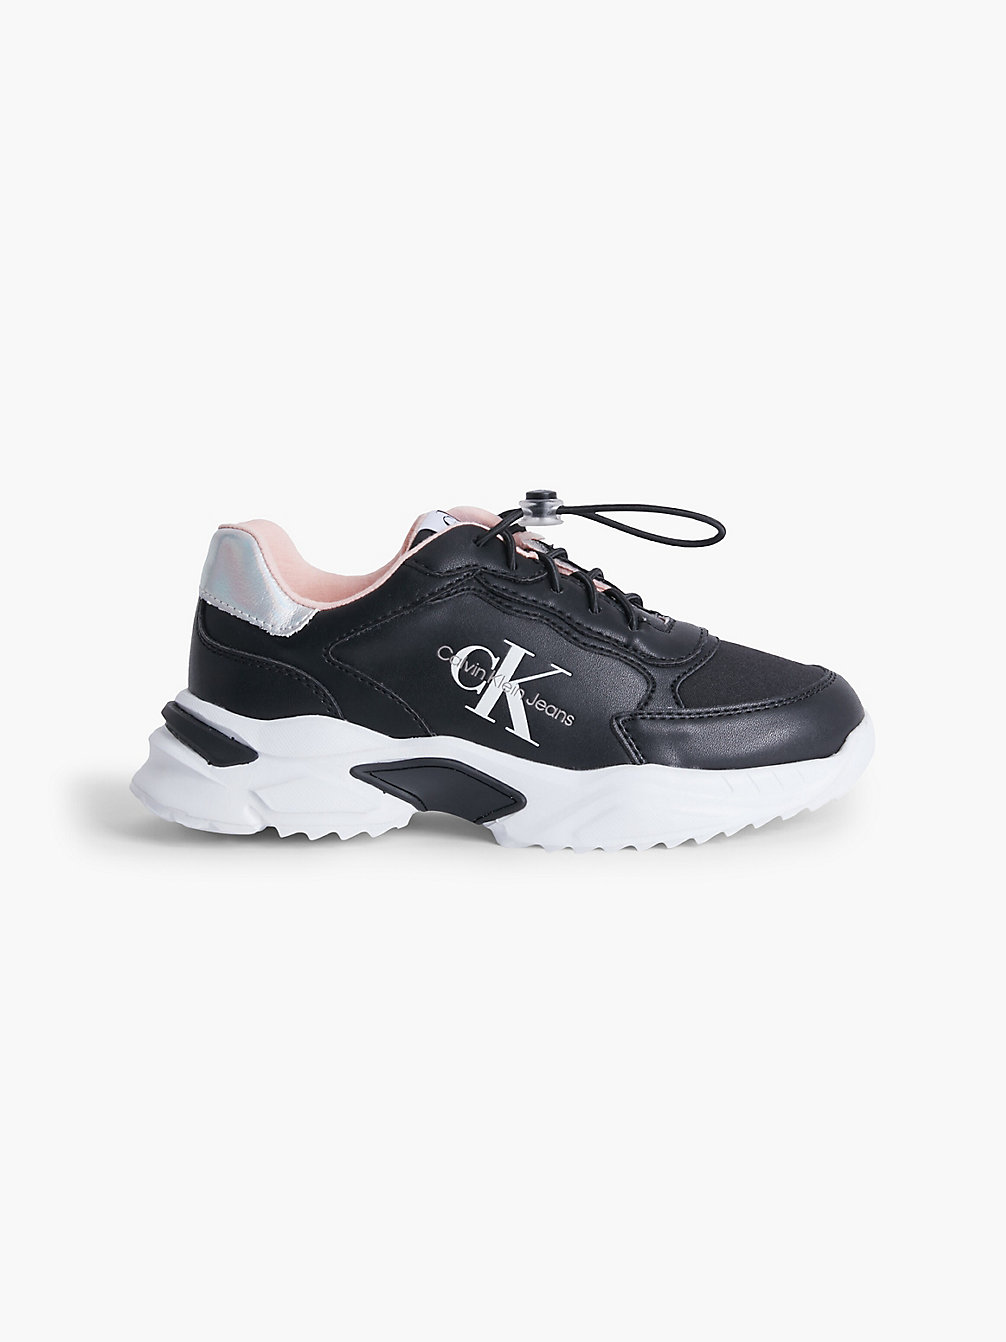 BLACK/WHITE/PINK Recycelte High Top Sneakers Für Kinder undefined girls Calvin Klein